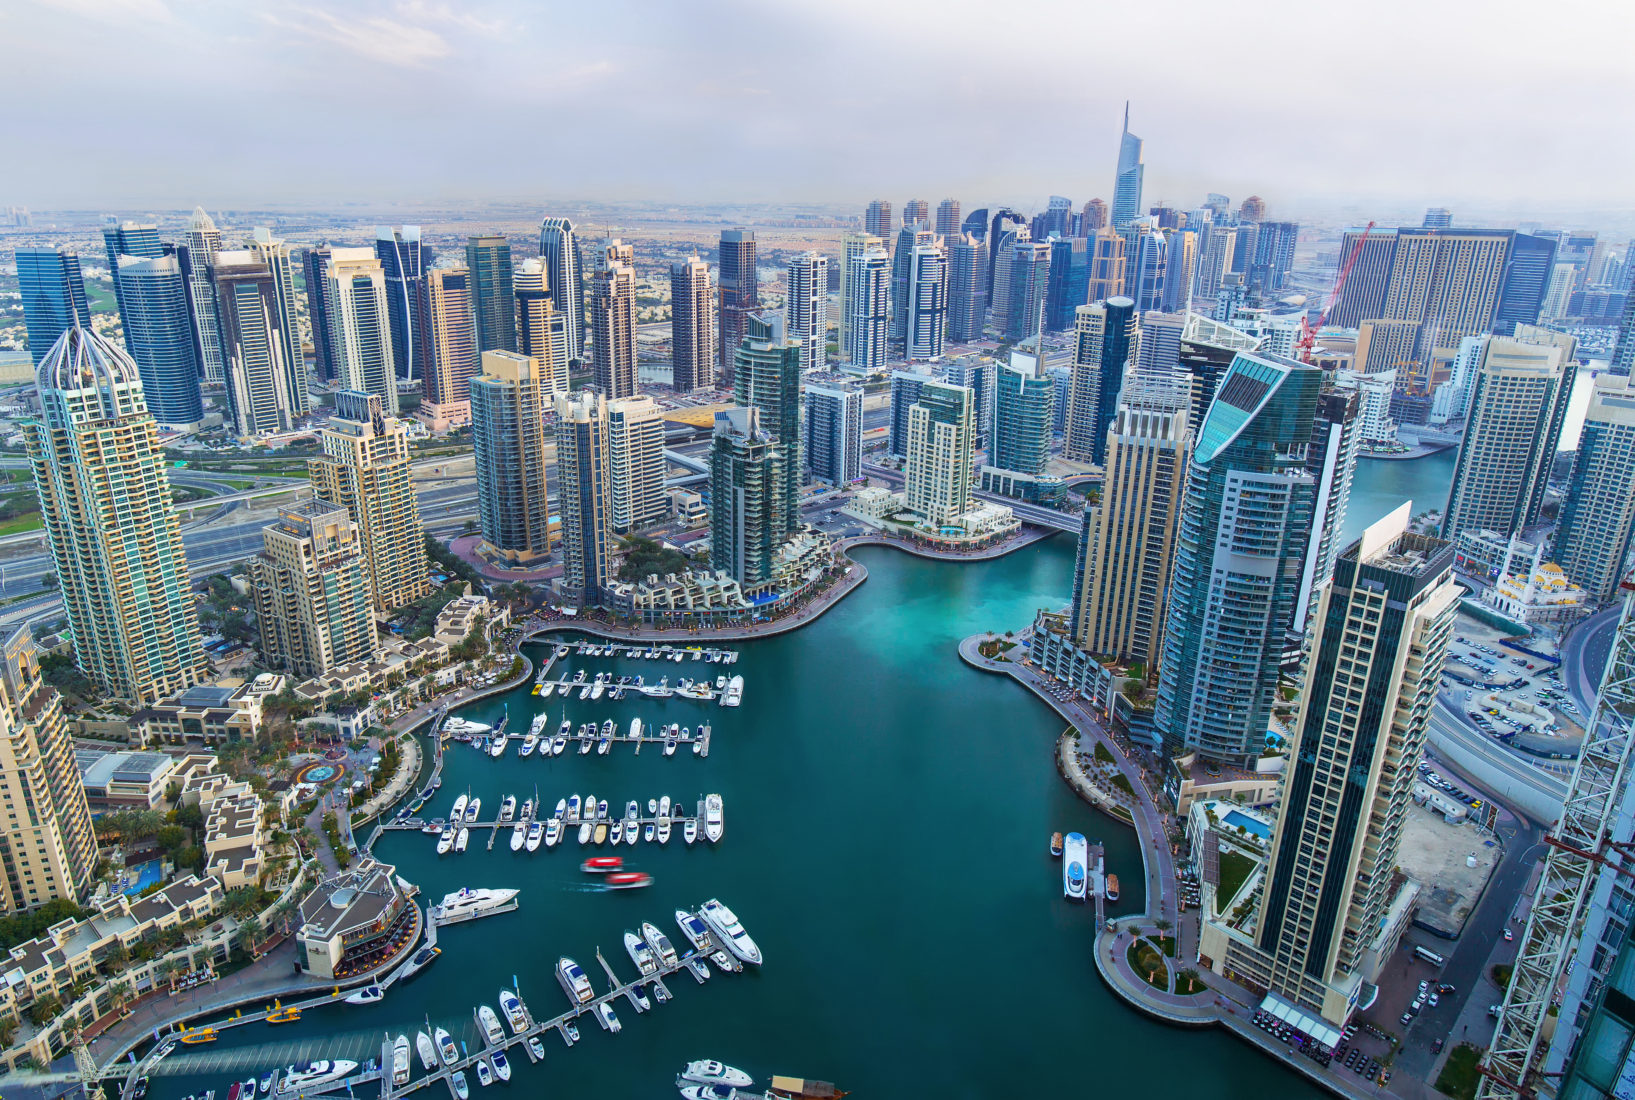 رابطة "دراسات الشرق الأوسط" تحذر الباحثين من السفر إلى الإمارات